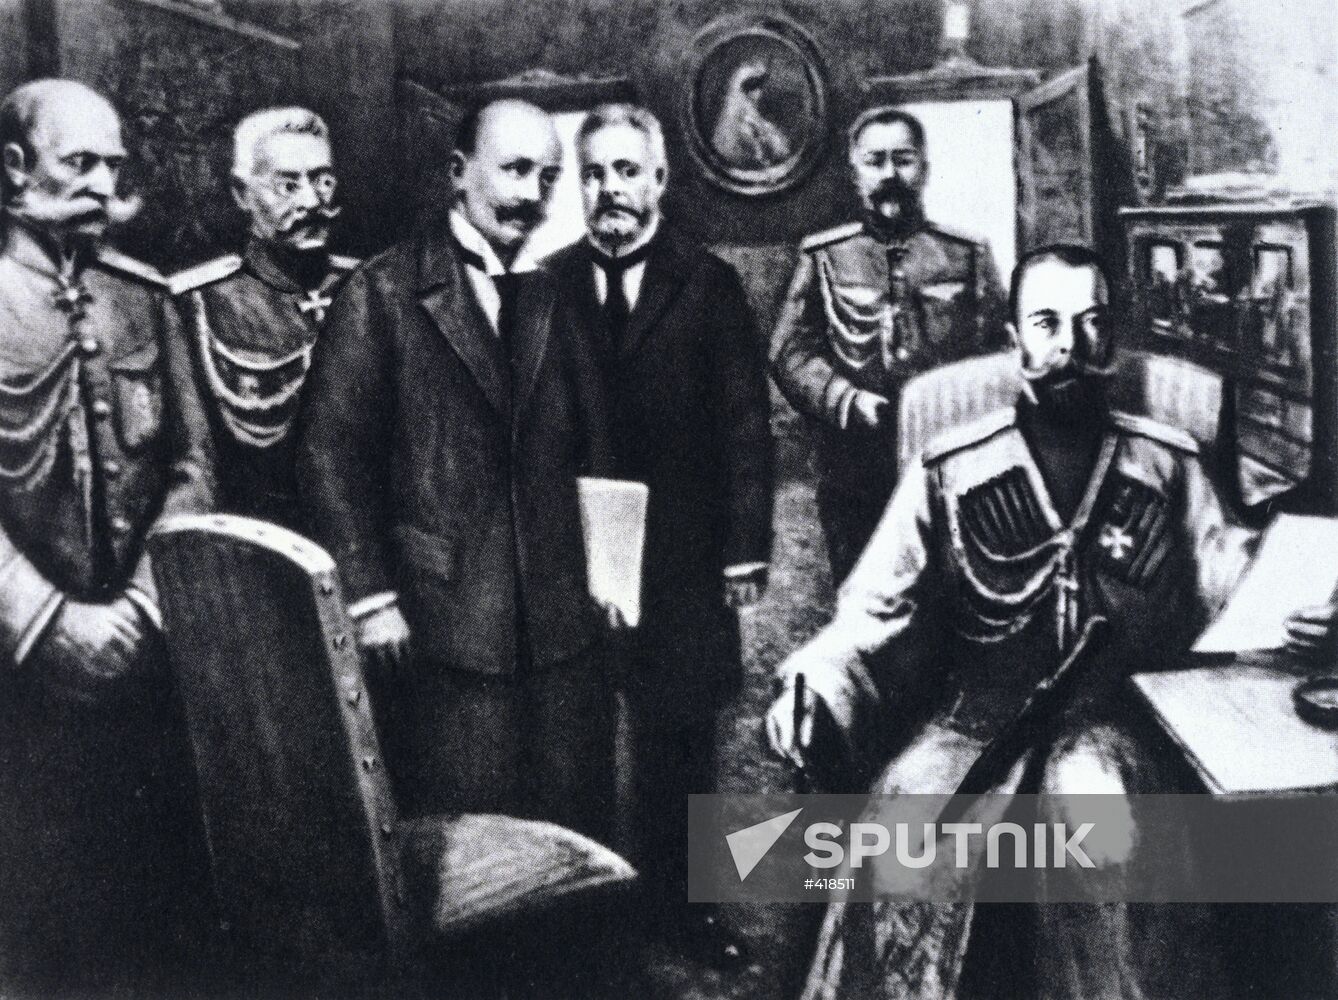 Russian Emperor Nicholas II's abdication